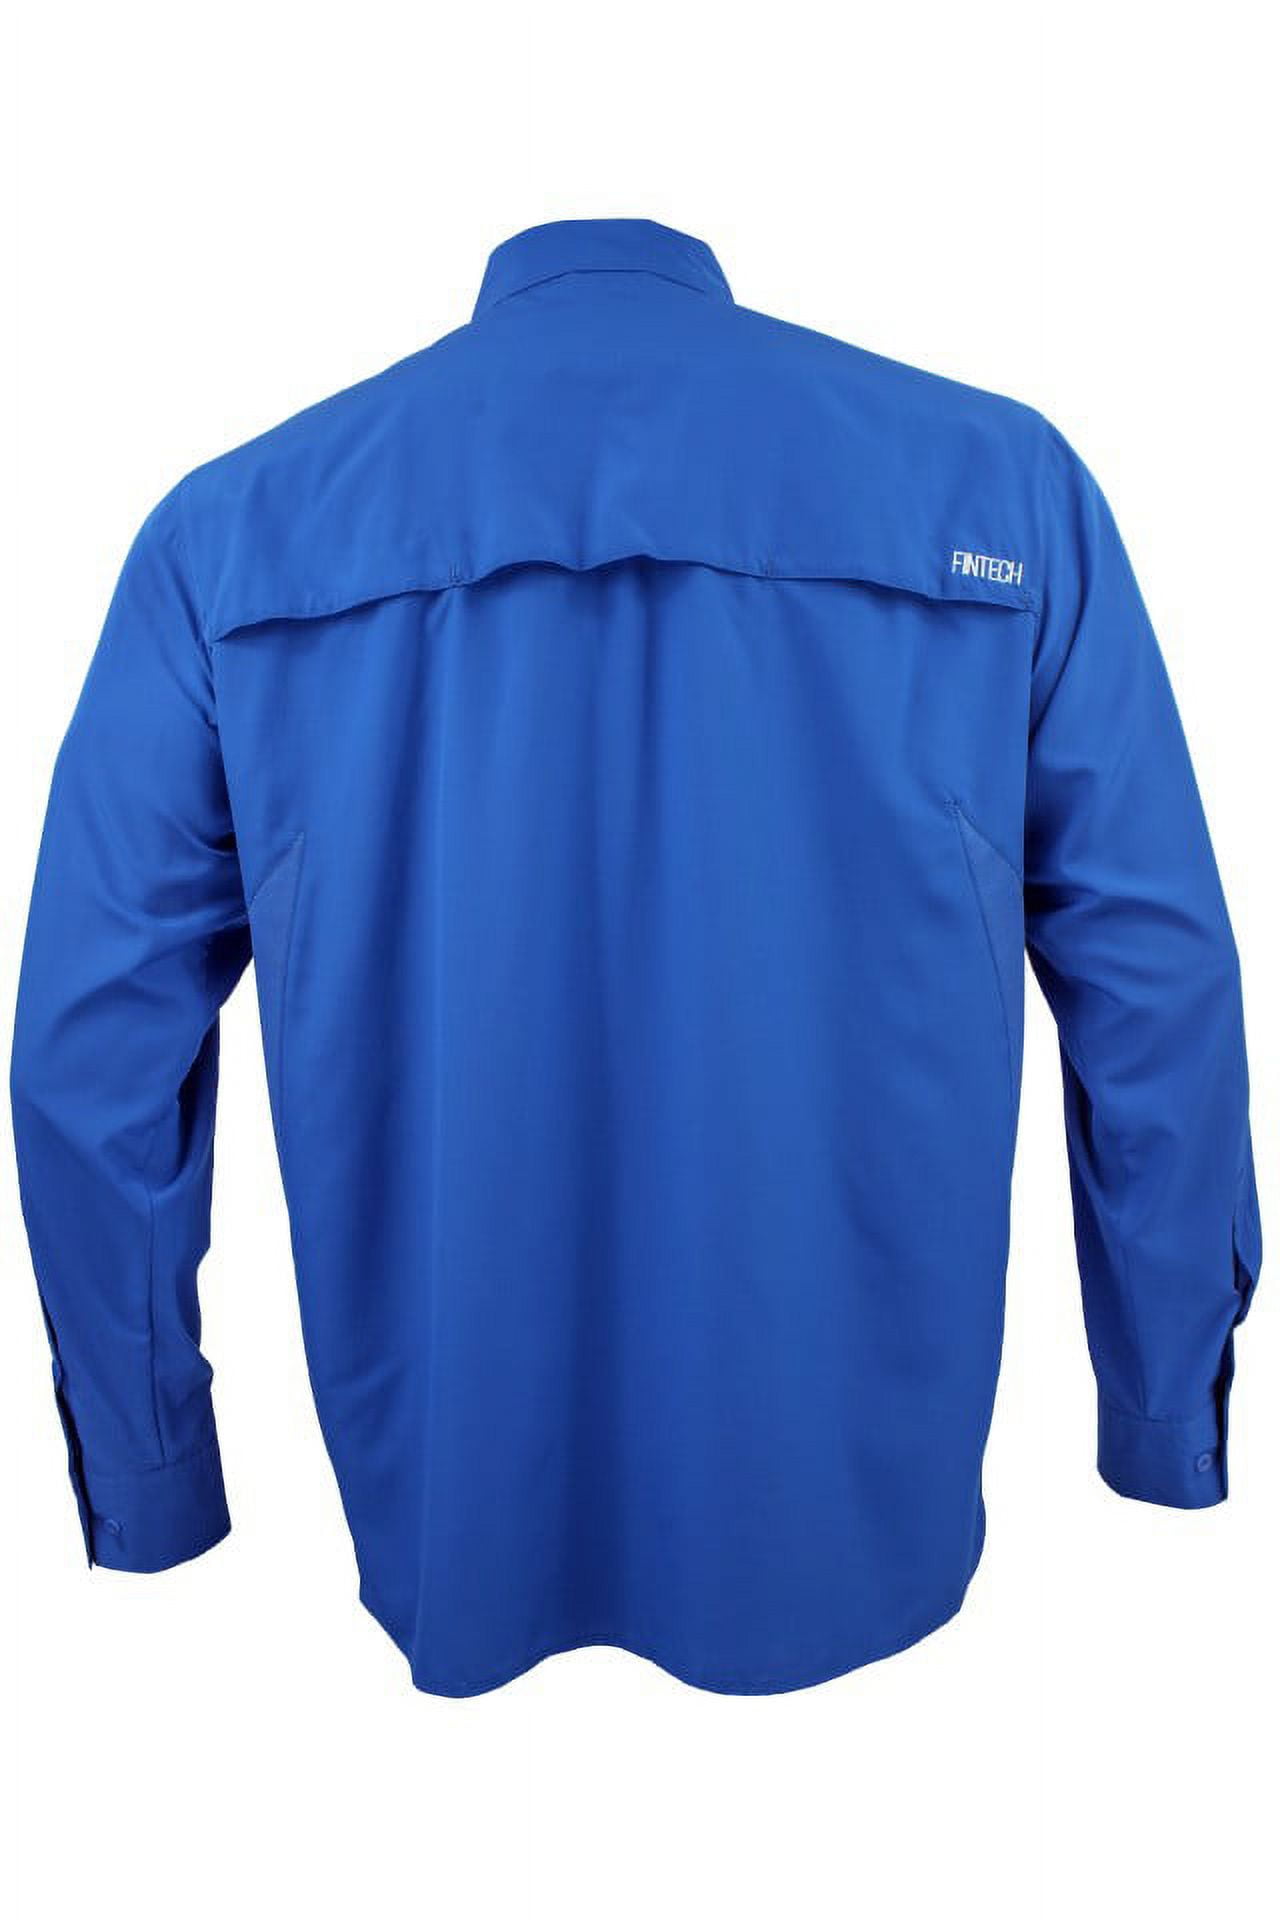 Fintech performance Fishing Shirt Mens XXL 2XL Short Sleeve UV 50+ Bass  Graphic